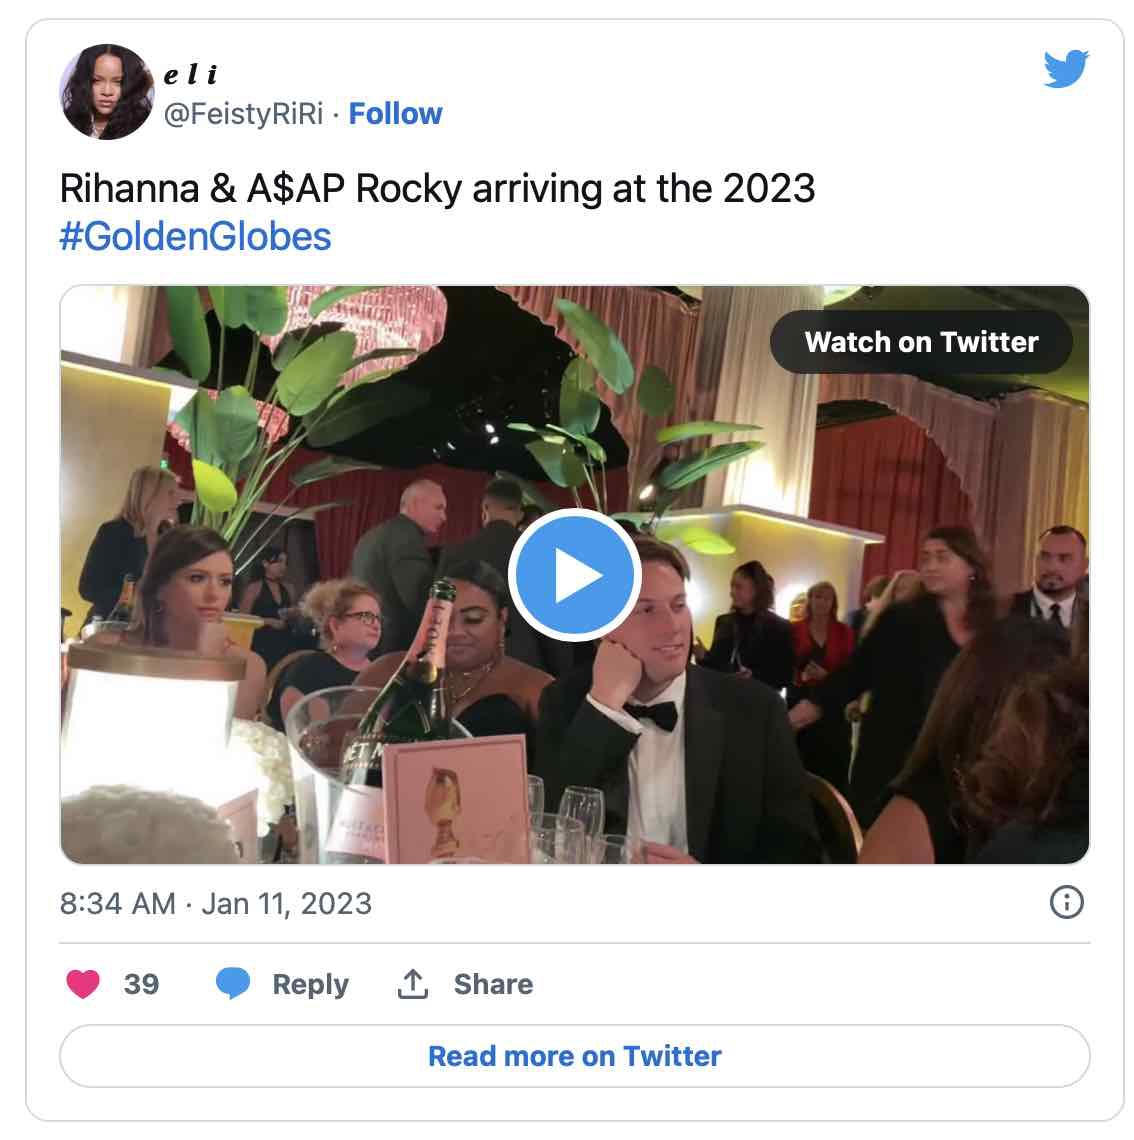 Rihanna & A$AP Rocky Golden Globes 2023